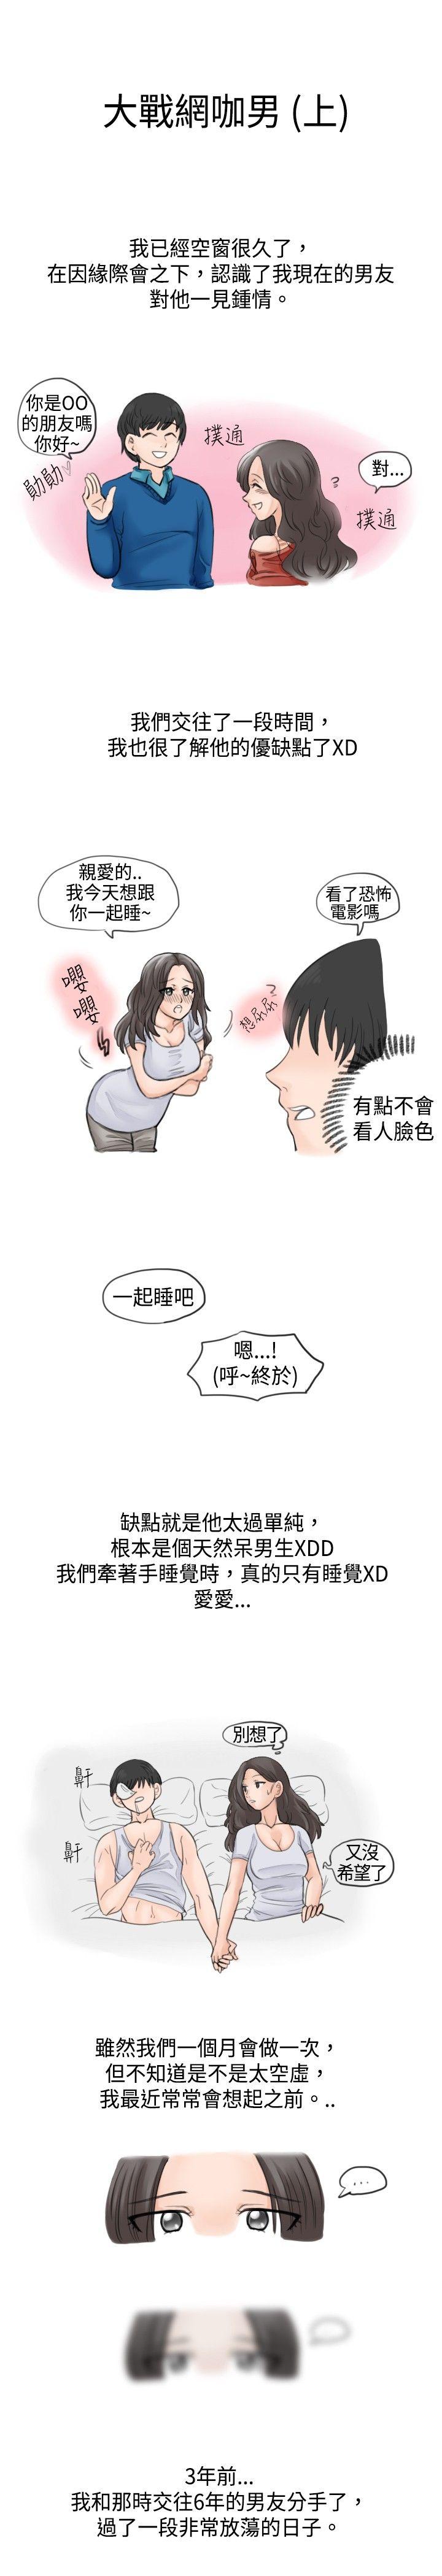 秘密Story  大战网咖男(上) 漫画图片1.jpg